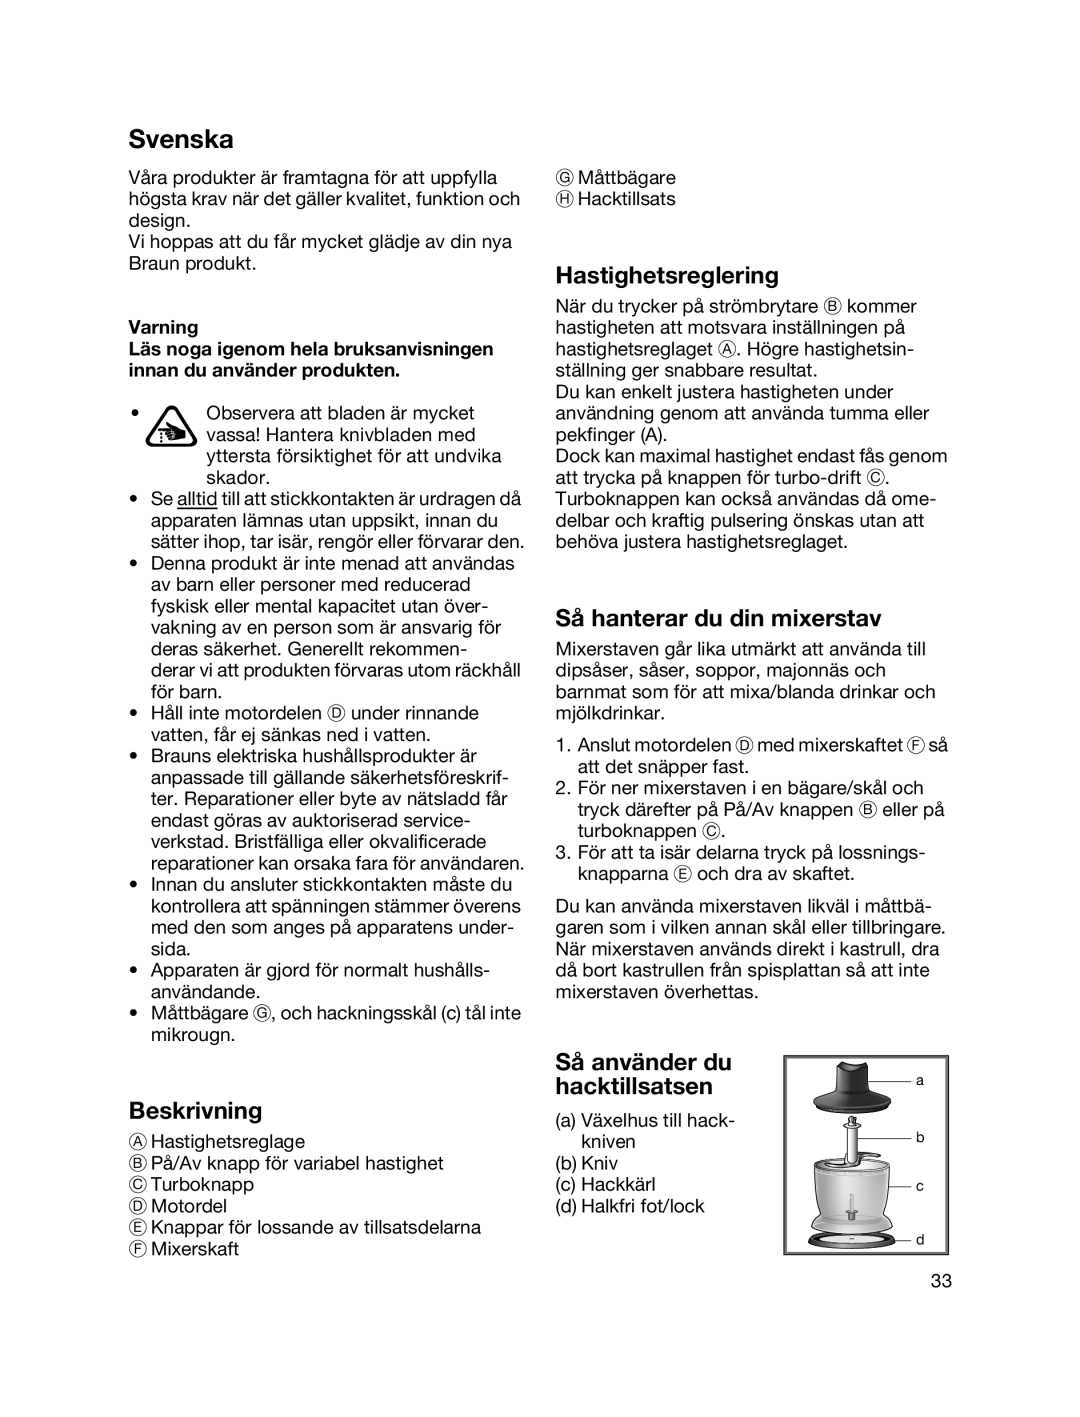 Braun MR700 manual Svenska, Hastighetsreglering, Så hanterar du din mixerstav, Beskrivning, Så använder du hacktillsatsen 